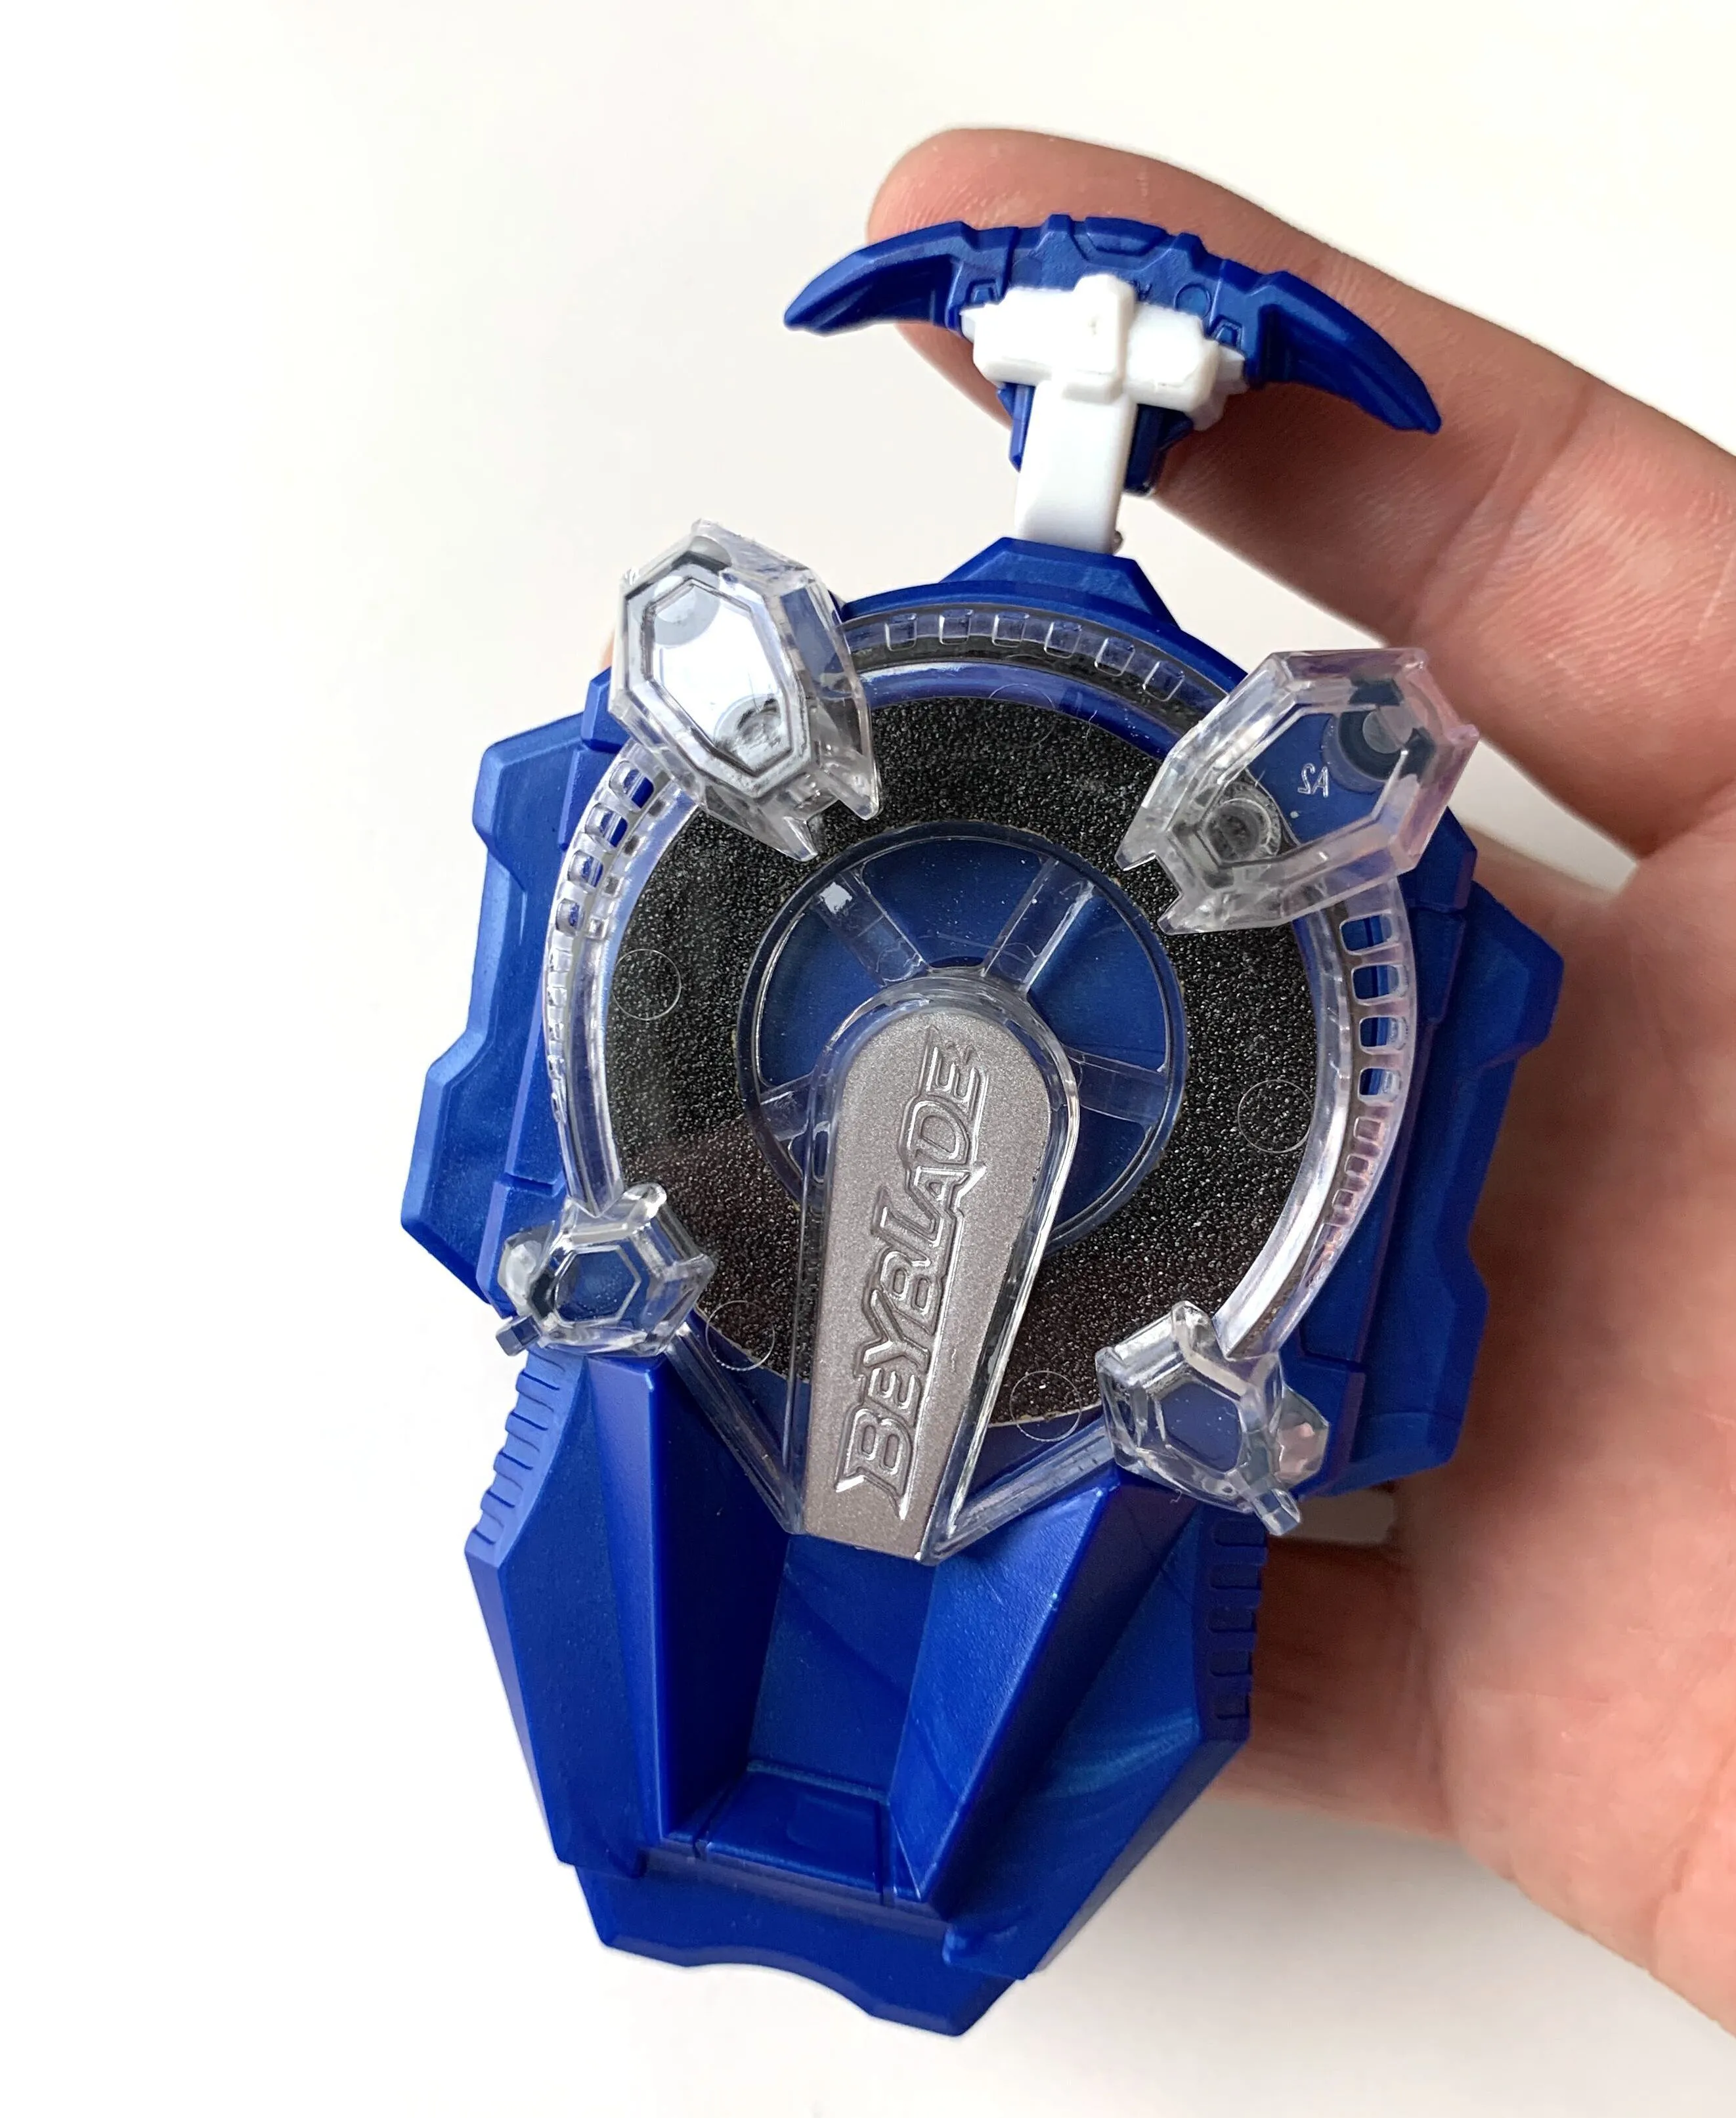 Takara Tomy Bayblade Super King Gyroskop B166 Blue Spark Beyblade Burst Launcher Spielzeug für Kinder Jungen LJ20121625751907691